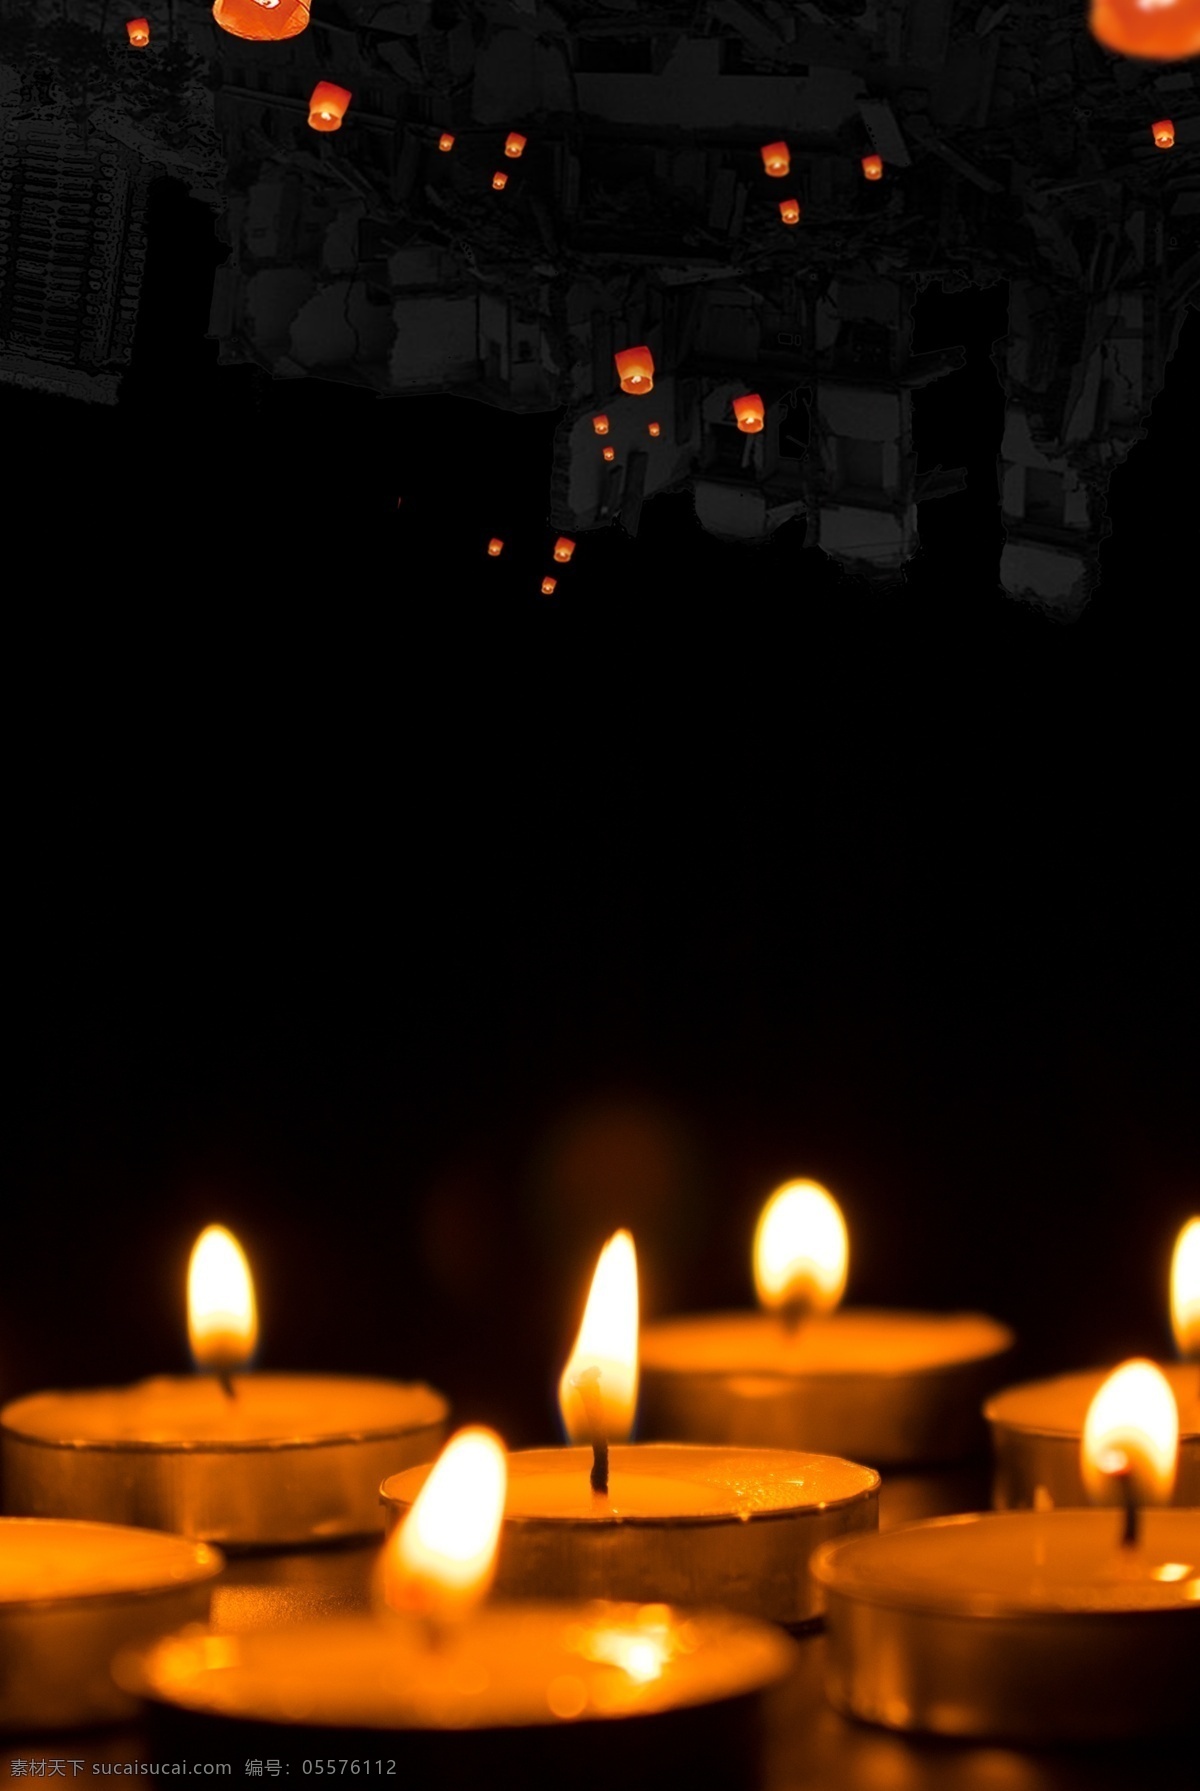 蜡烛 祈福 祝福 海报 地震 火灾 天灾 平安 奉献爱心 捐款 慈善 抗震救灾 灾后重建 捐赠